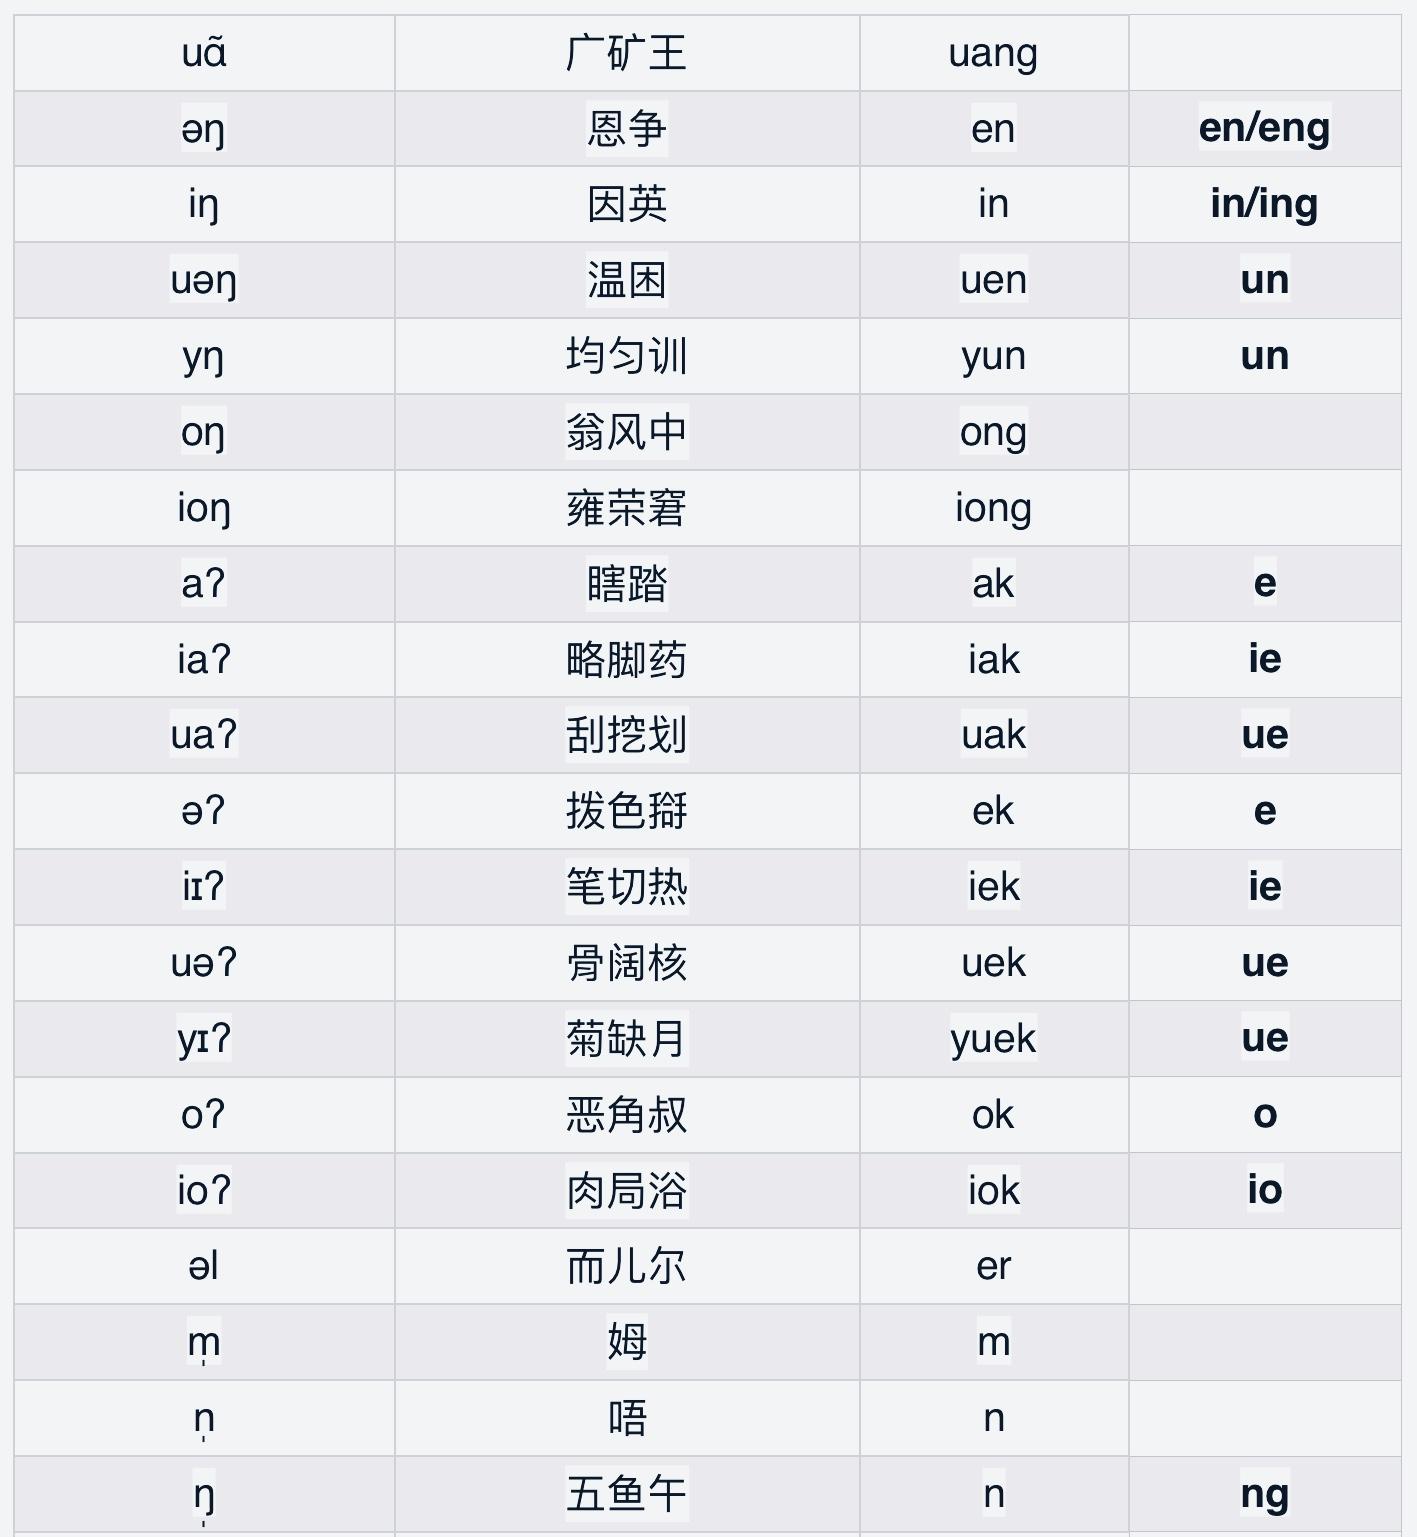 上海话是否有一套完整的拼音体系?